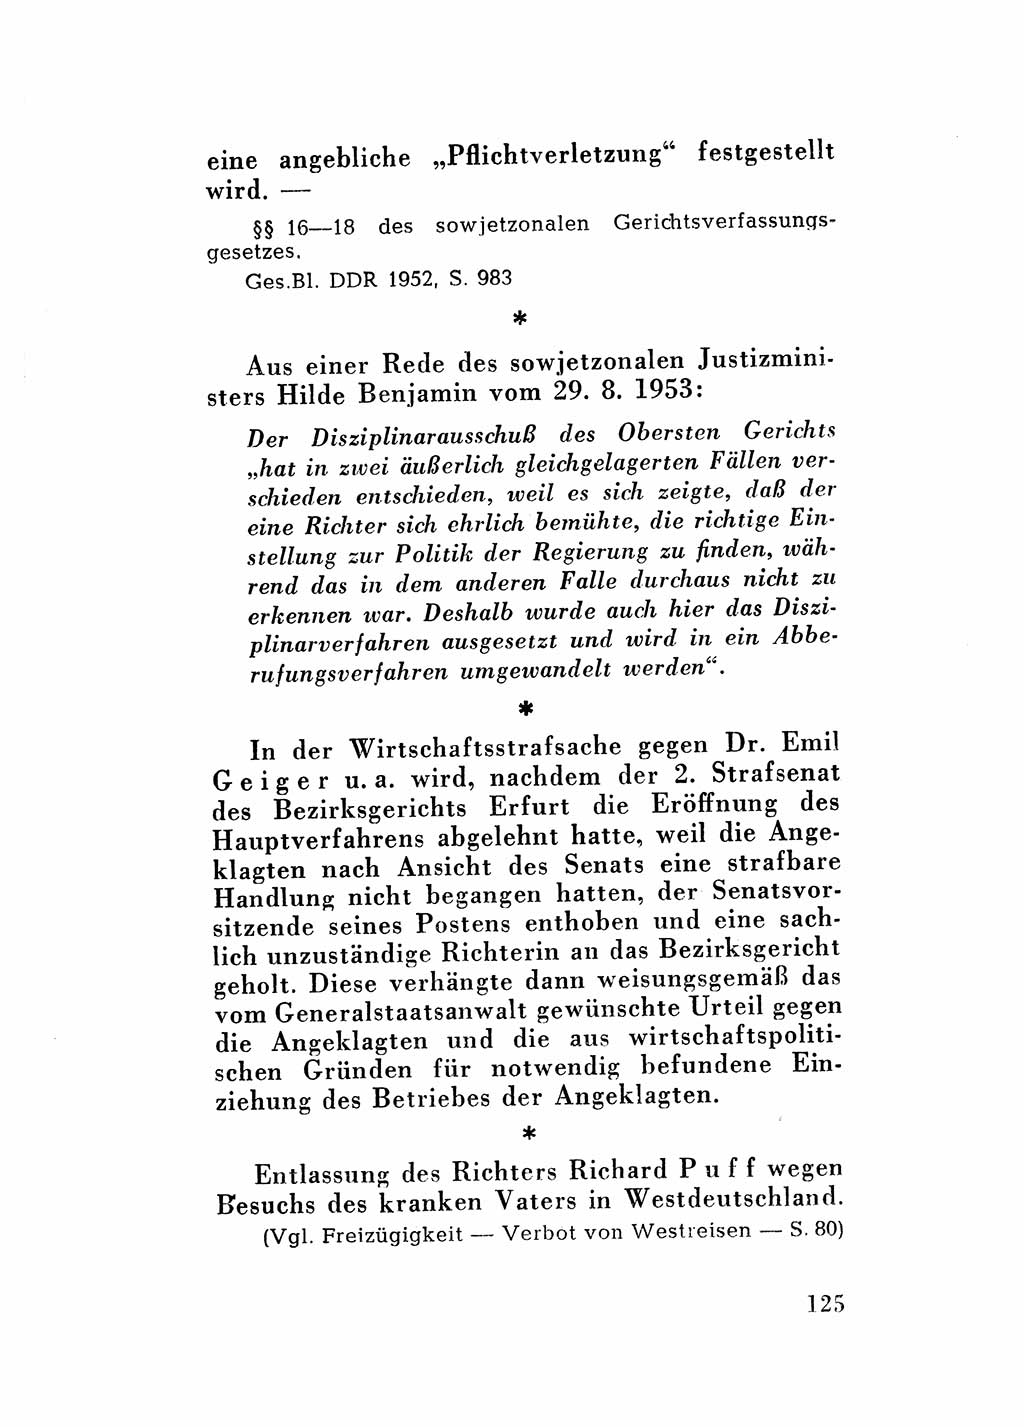 Katalog des Unrechts, Untersuchungsausschuß Freiheitlicher Juristen (UfJ) [Bundesrepublik Deutschland (BRD)] 1956, Seite 125 (Kat. UnR. UfJ BRD 1956, S. 125)